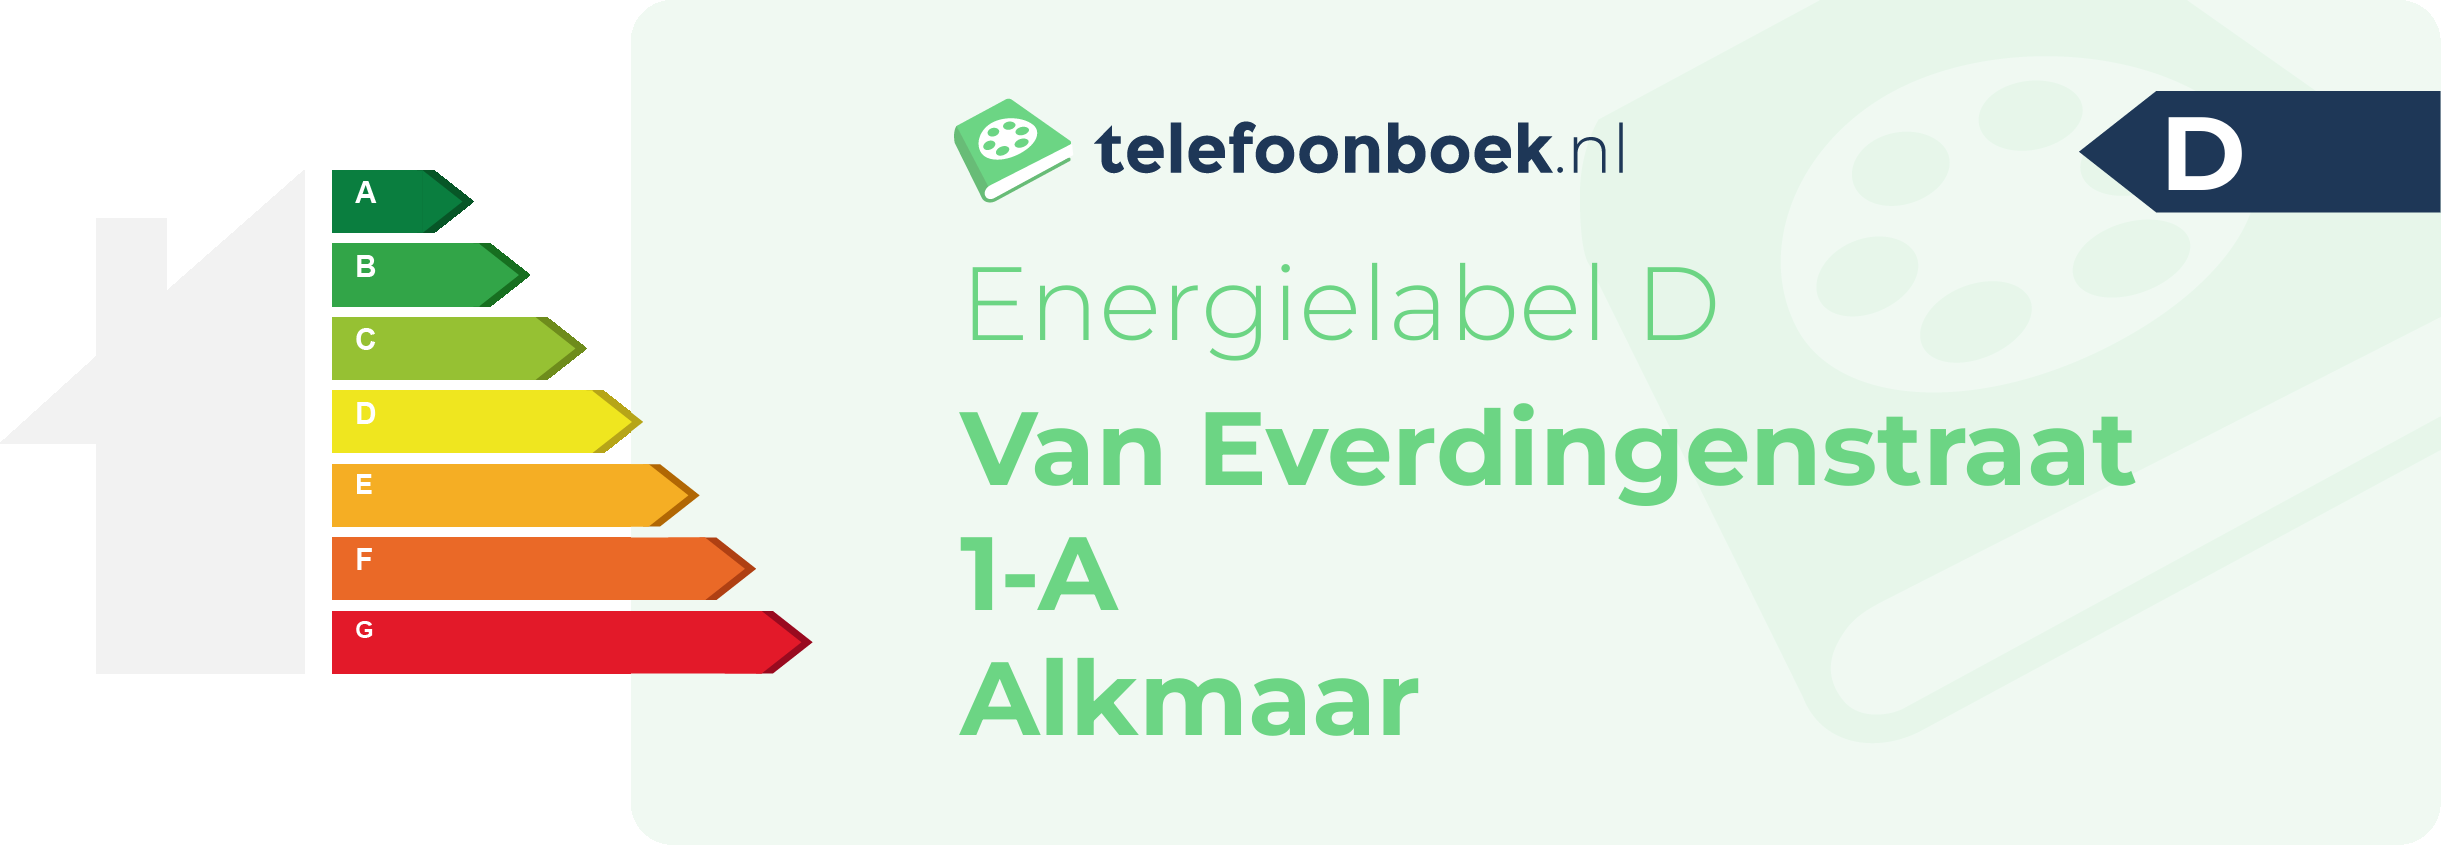 Energielabel Van Everdingenstraat 1-A Alkmaar